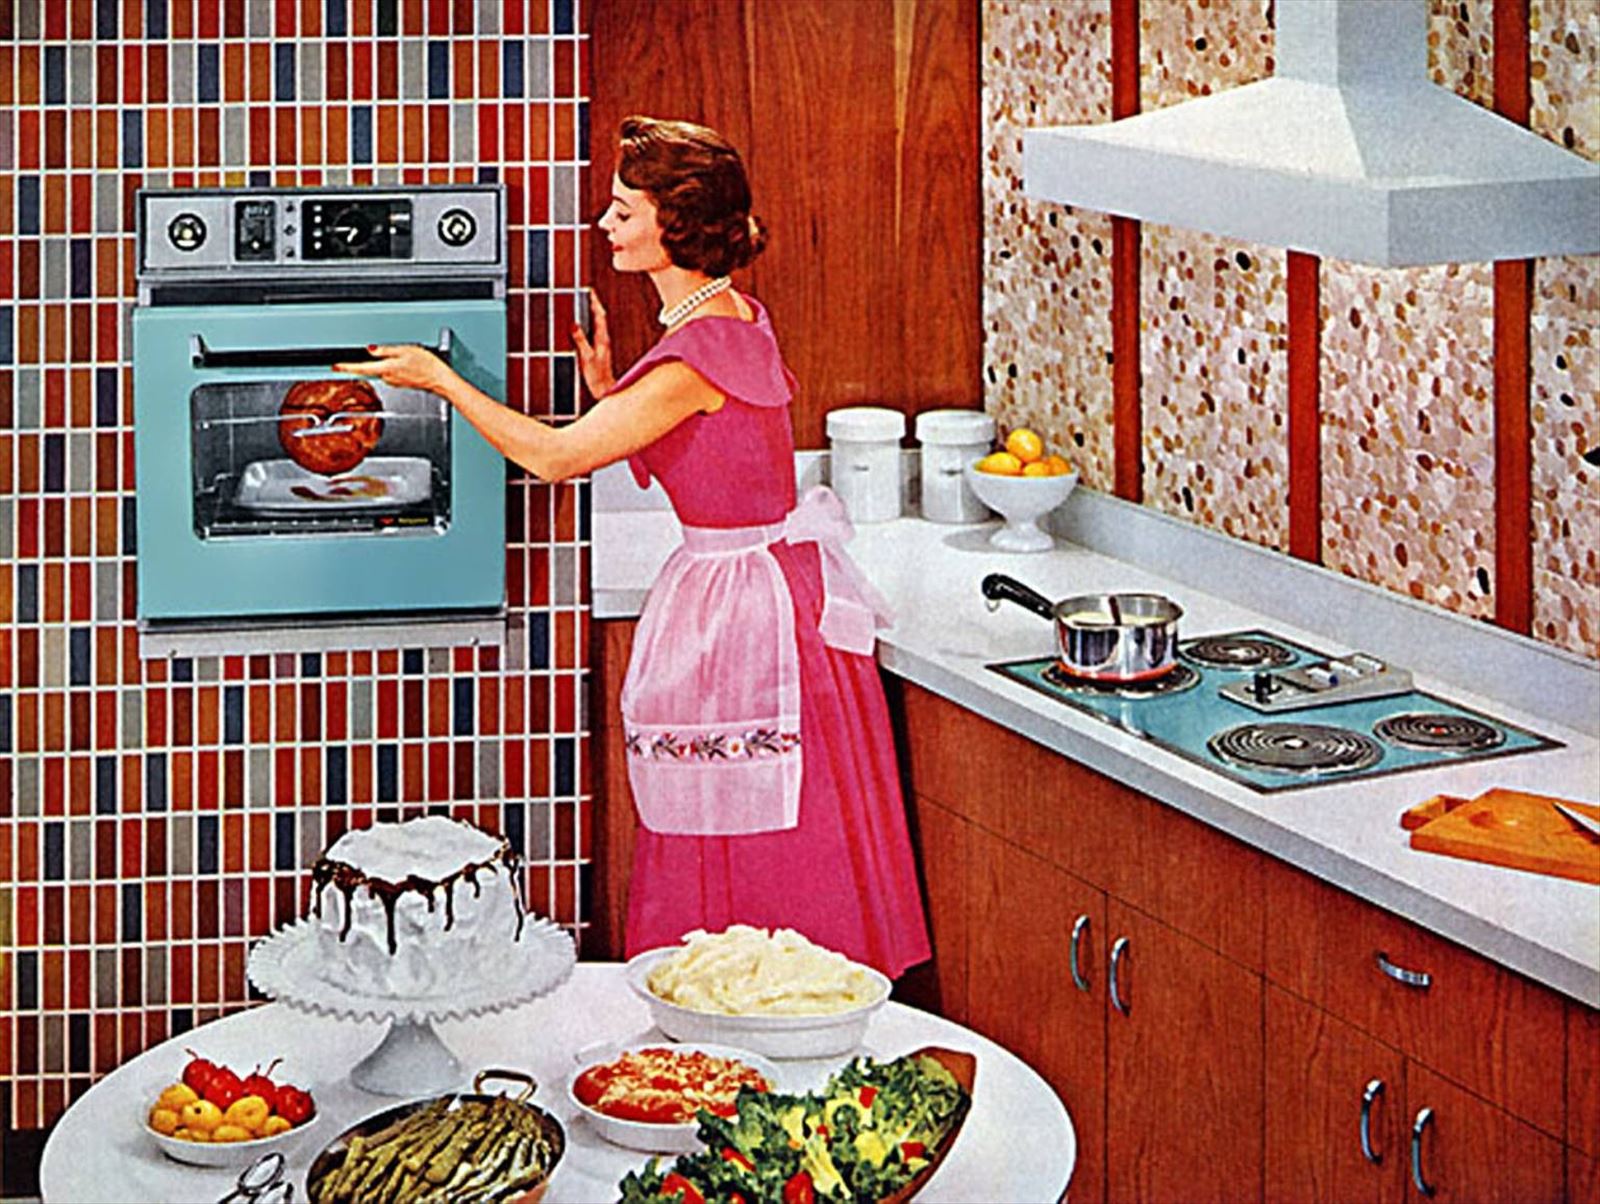 Семья беловых решила сделать ремонт на кухне. Хозяйка в доме. Кухня в стиле 50-х годов. Кухня в стиле ретро. Хозяйка на кухне.